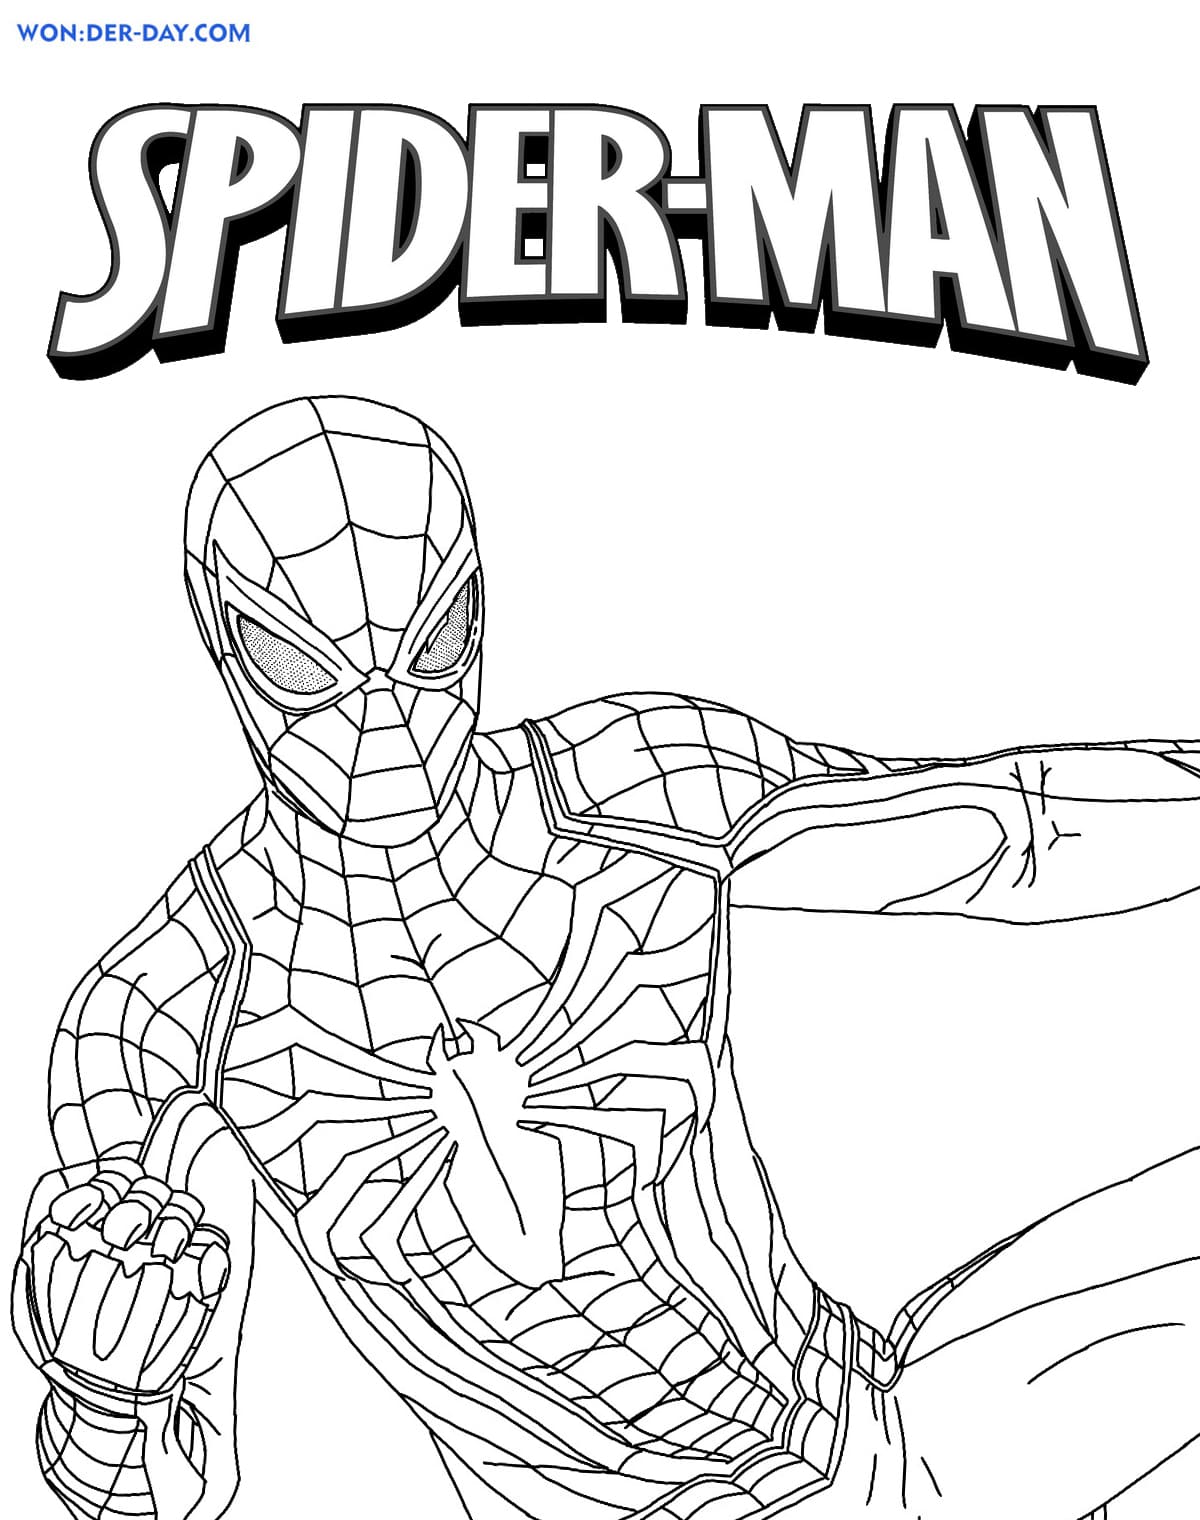 Spiderman Da Colorare Disegni Per Bambini Da Stampare | Images and ...